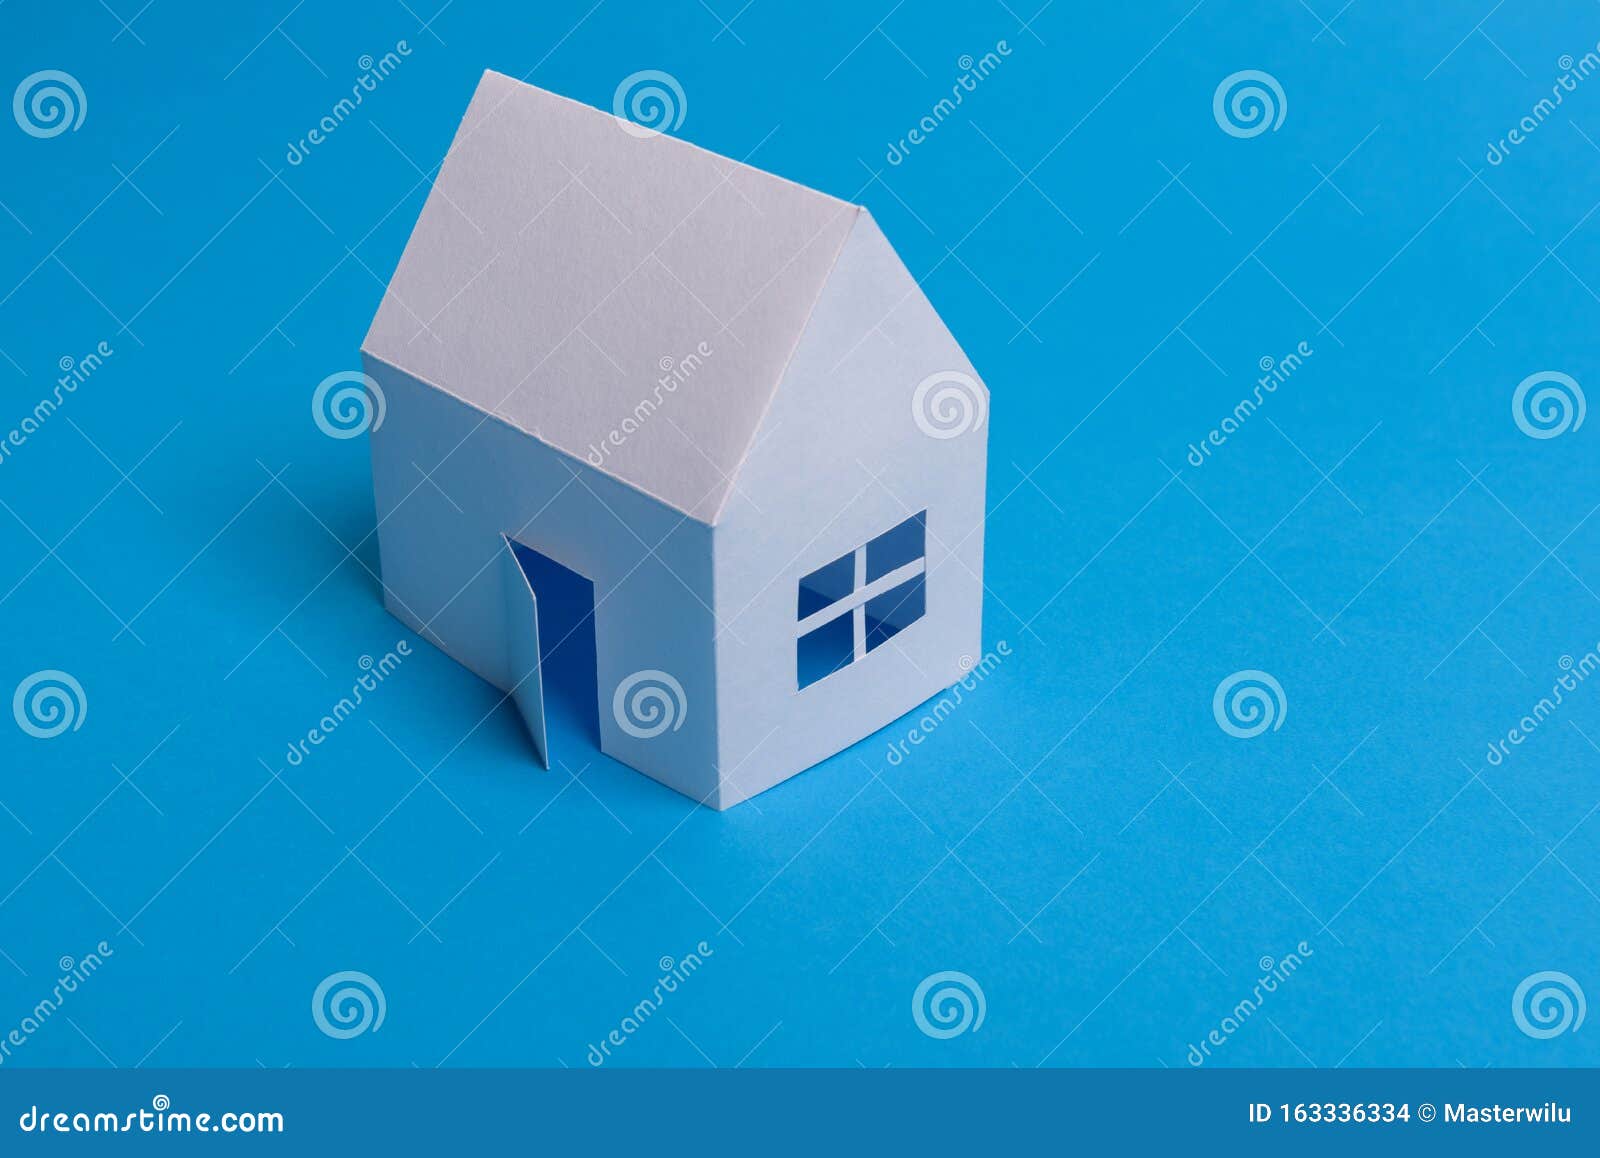 House Model Paper White